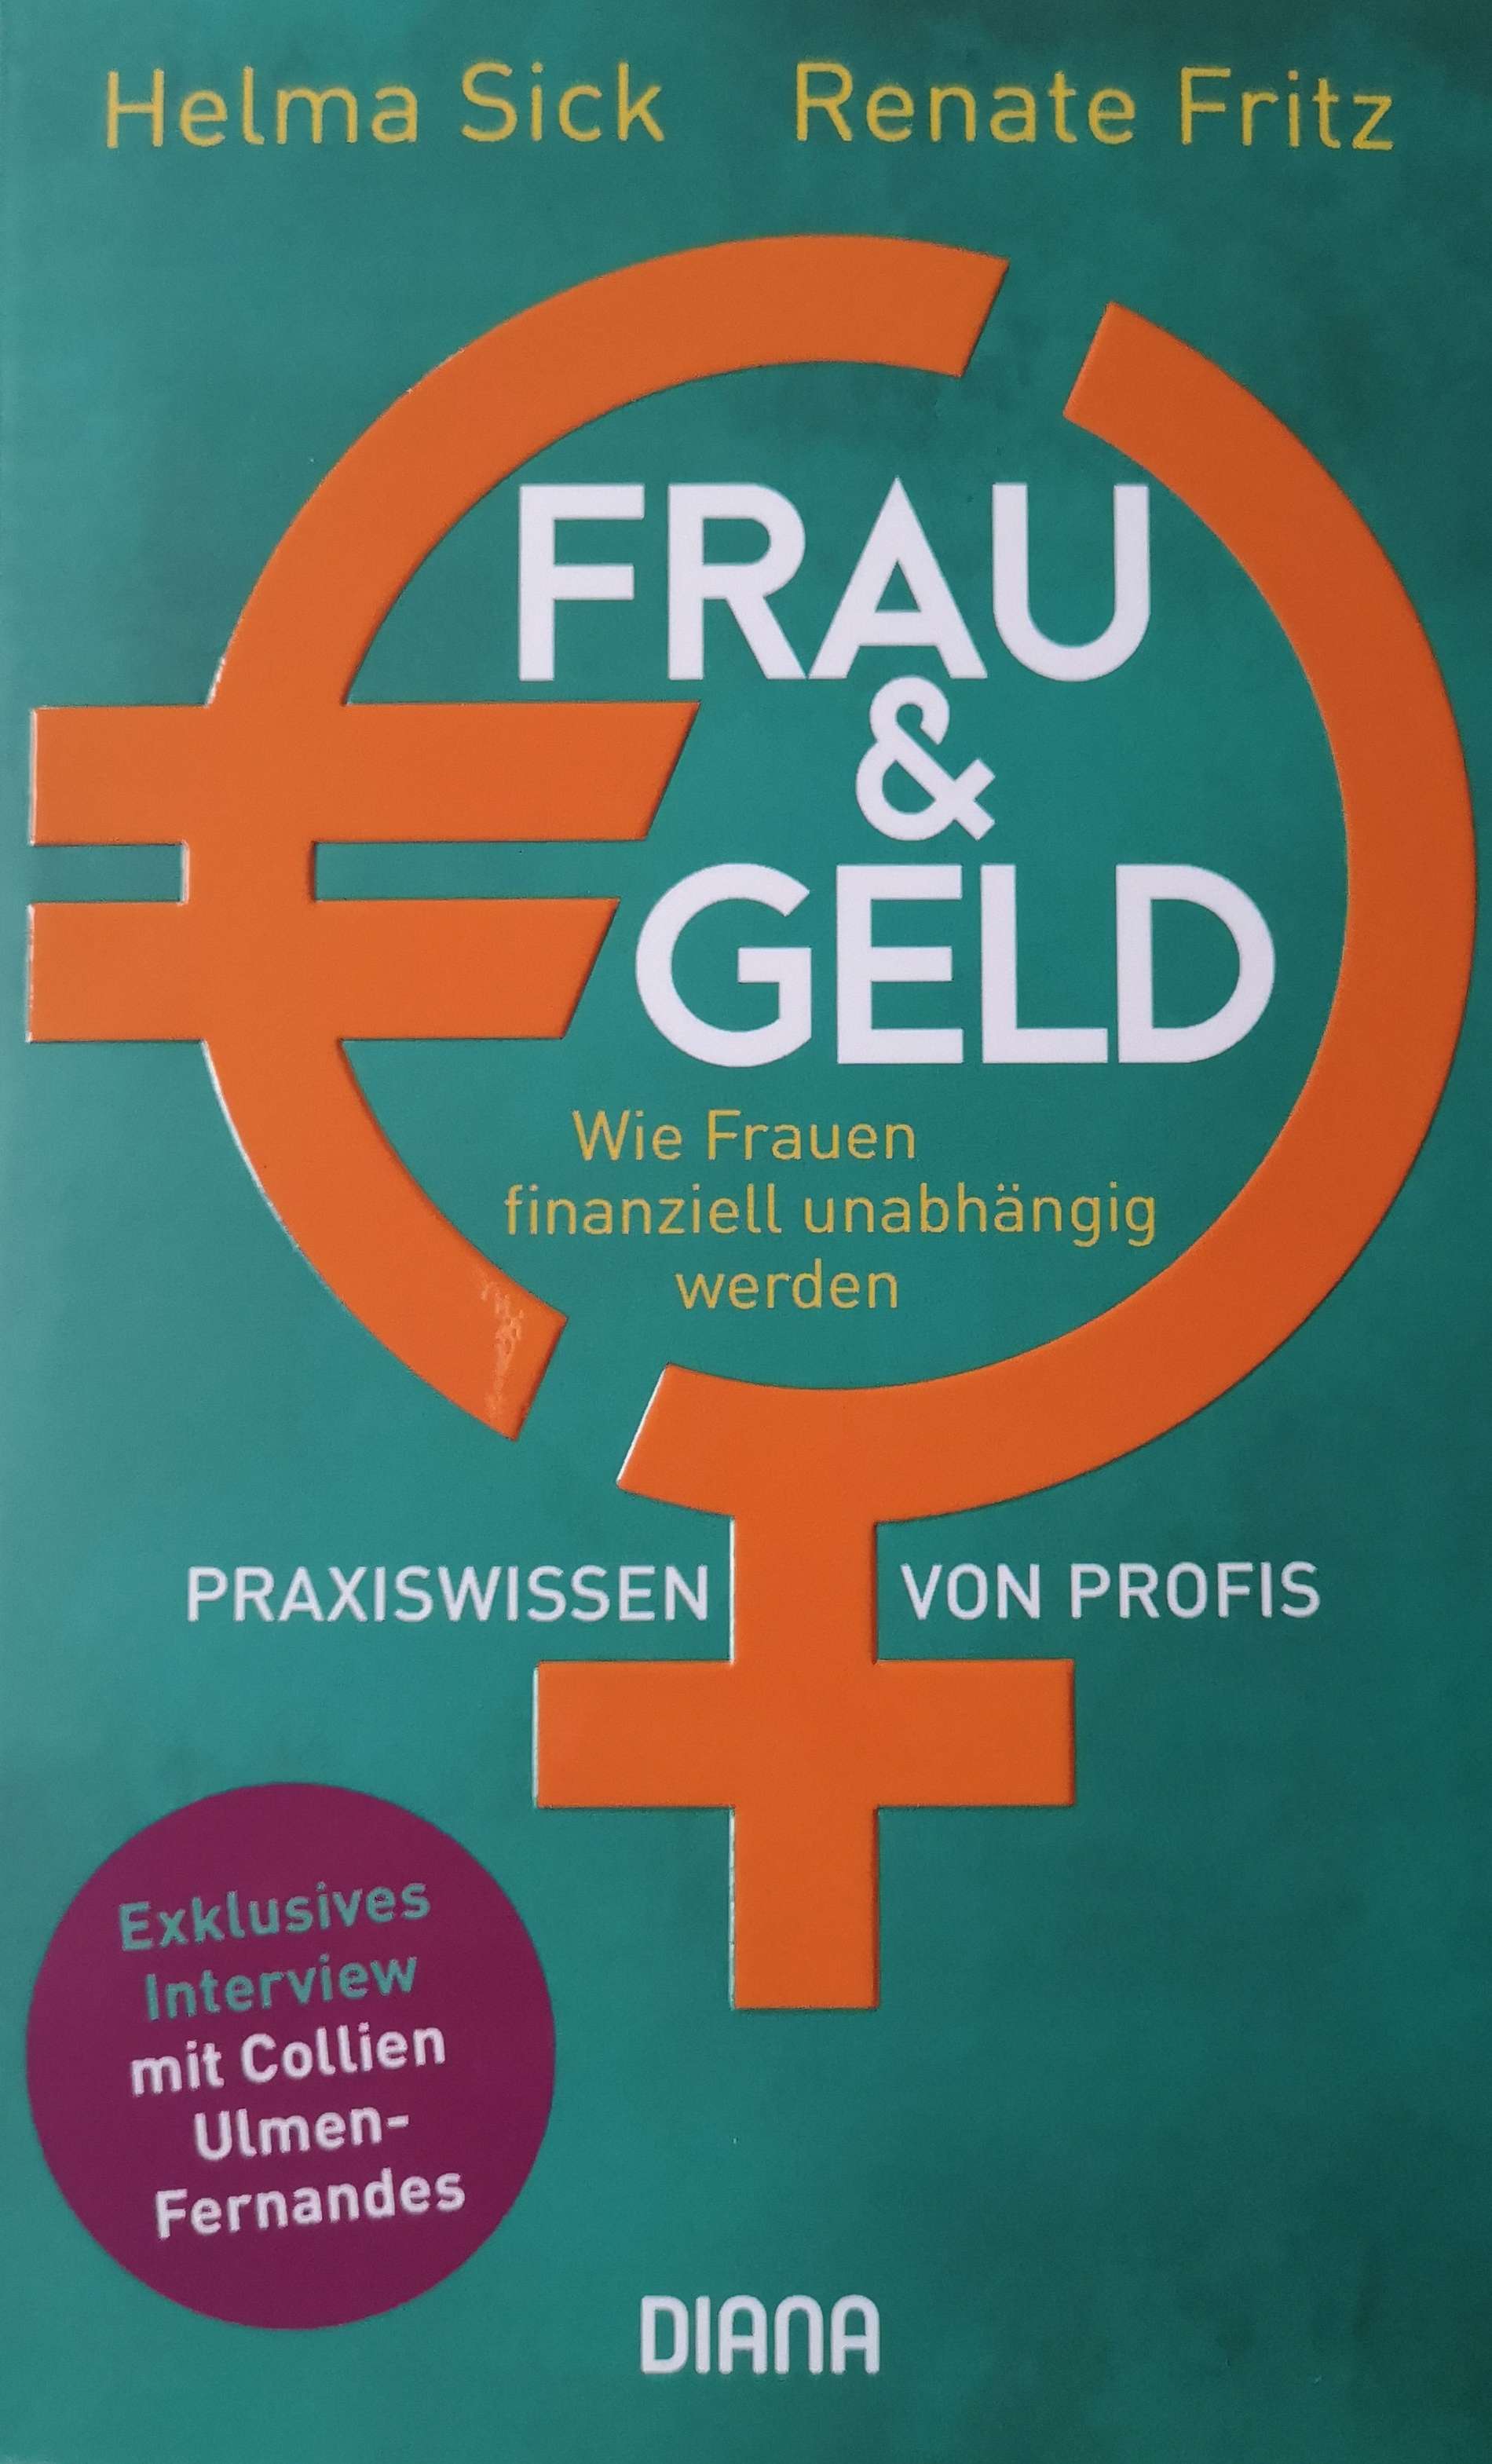 Buch: Frau & Geld von Helma Sick und Renate Fritz